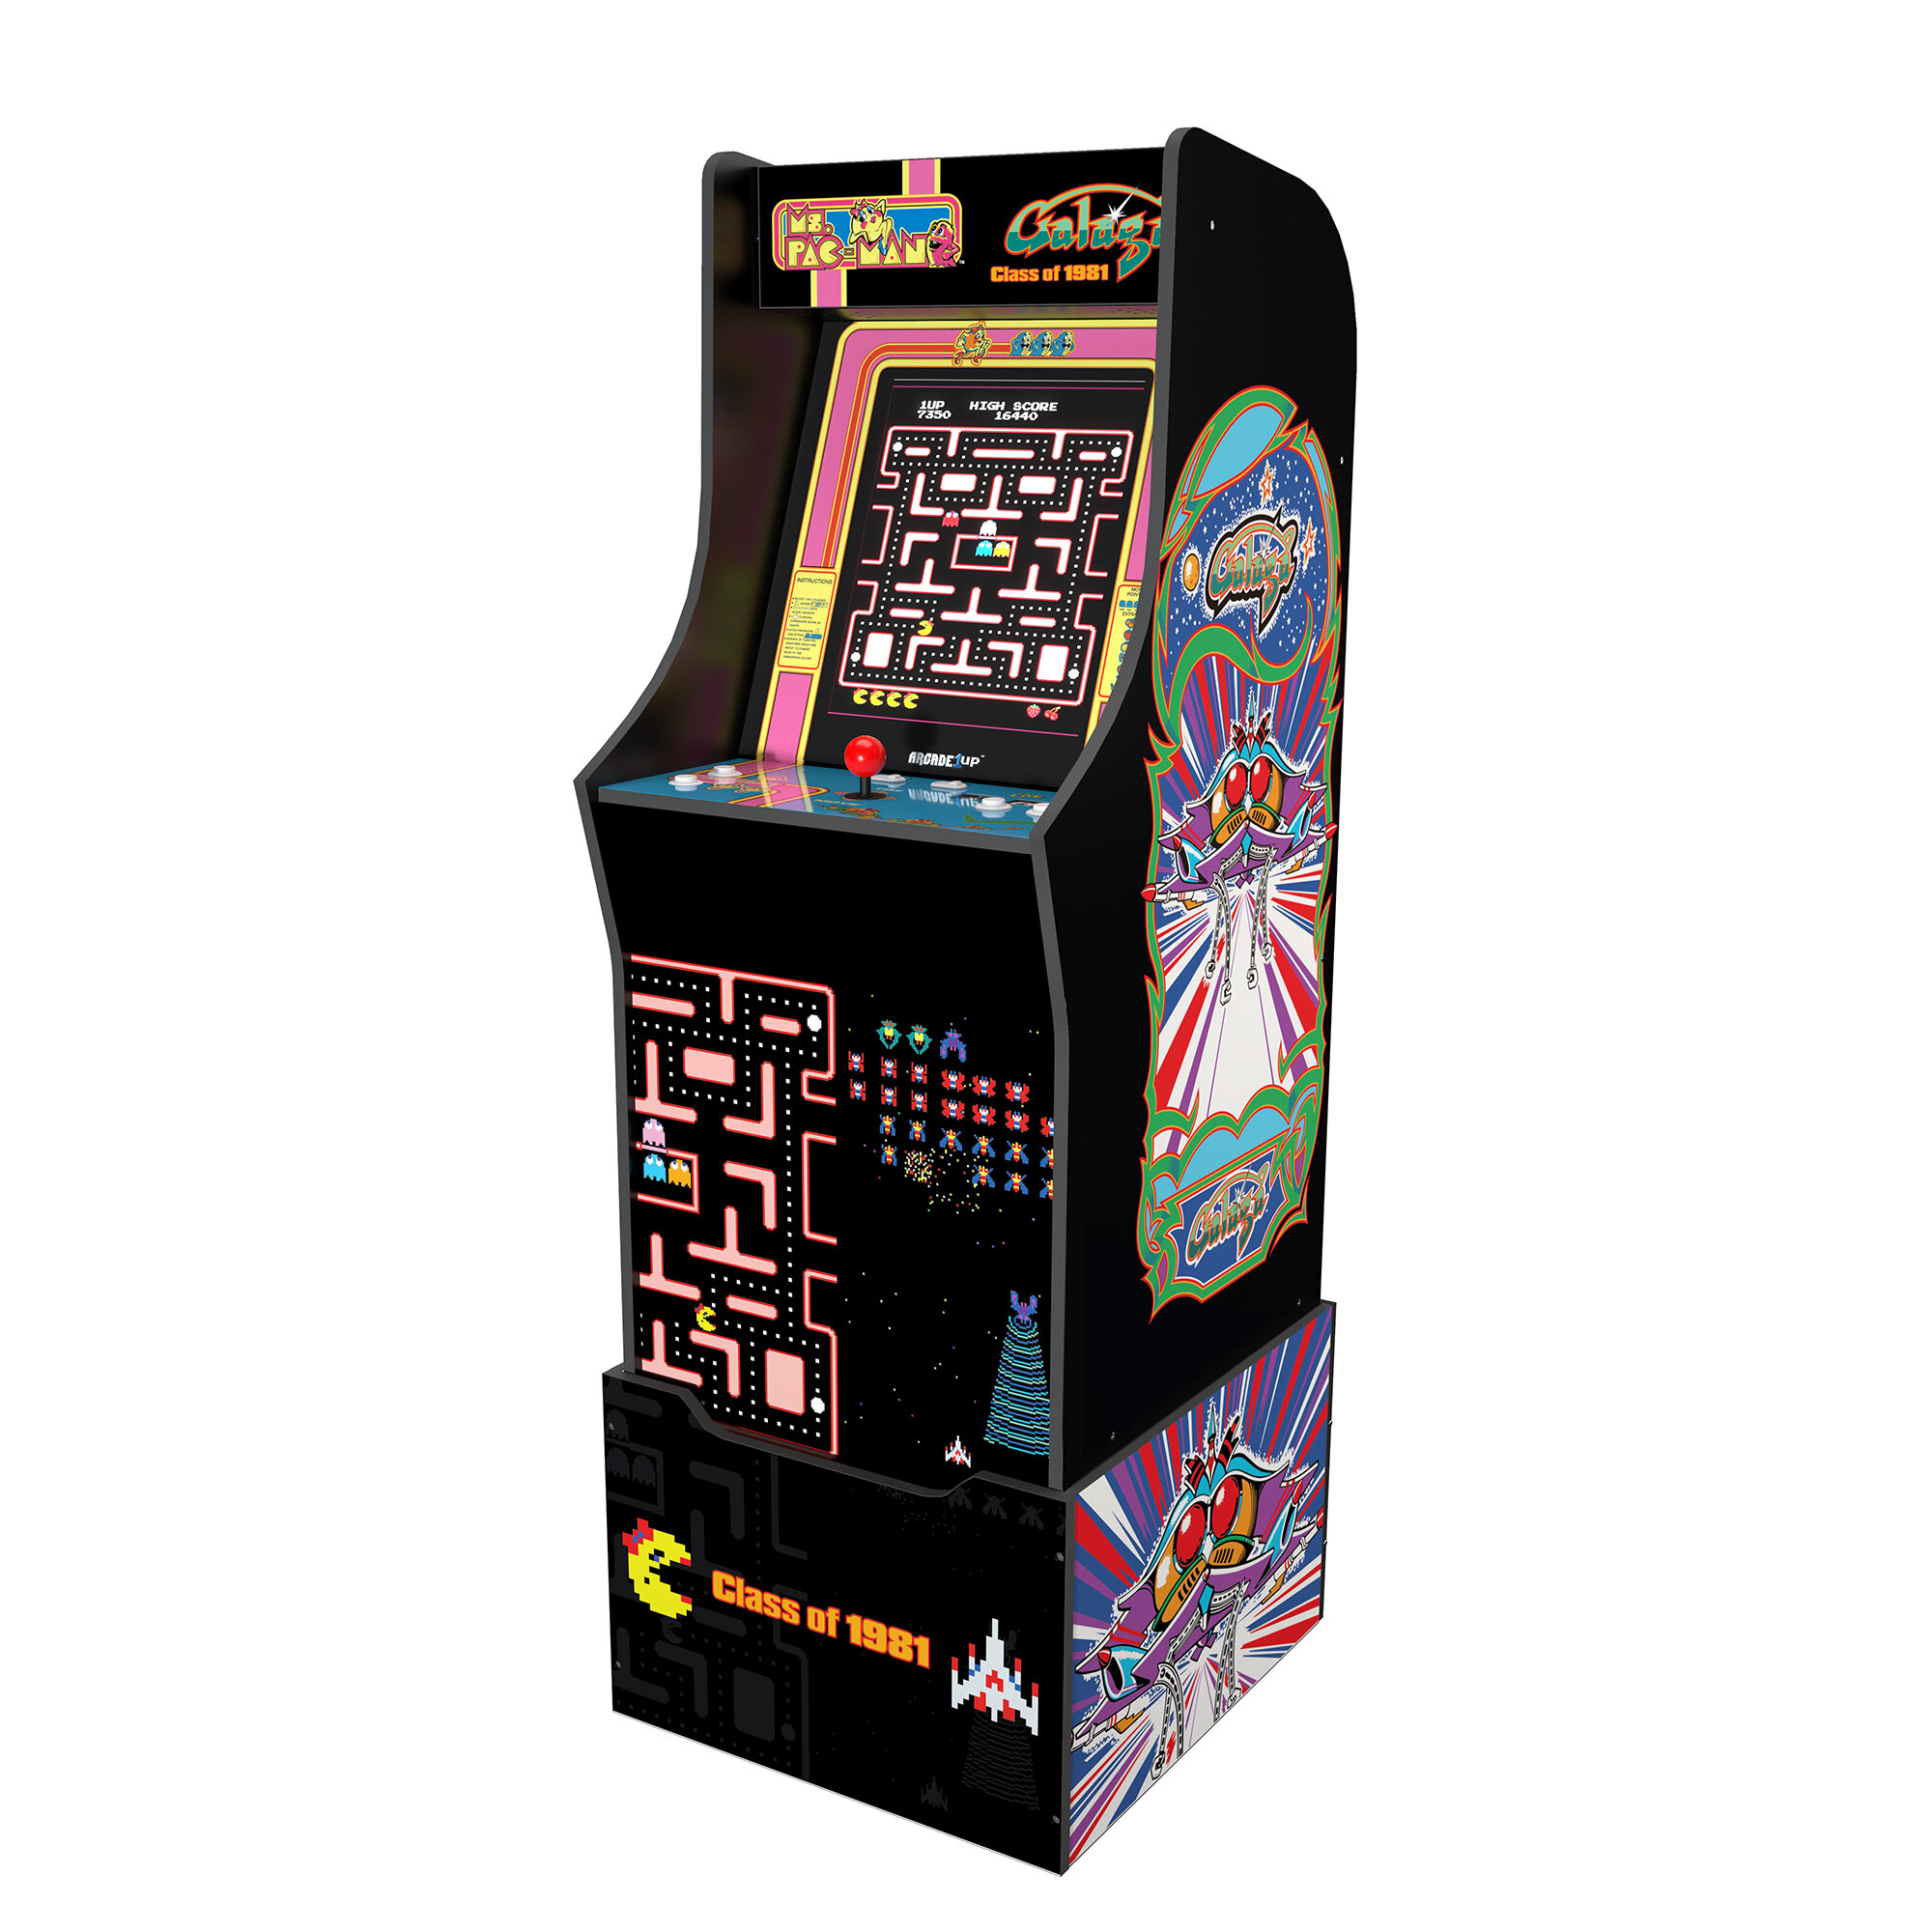 NEW Arcade1Up Super Pac-Man/Pacman Galaga Dig Dug Galaxian Cabinet W/ Riser 